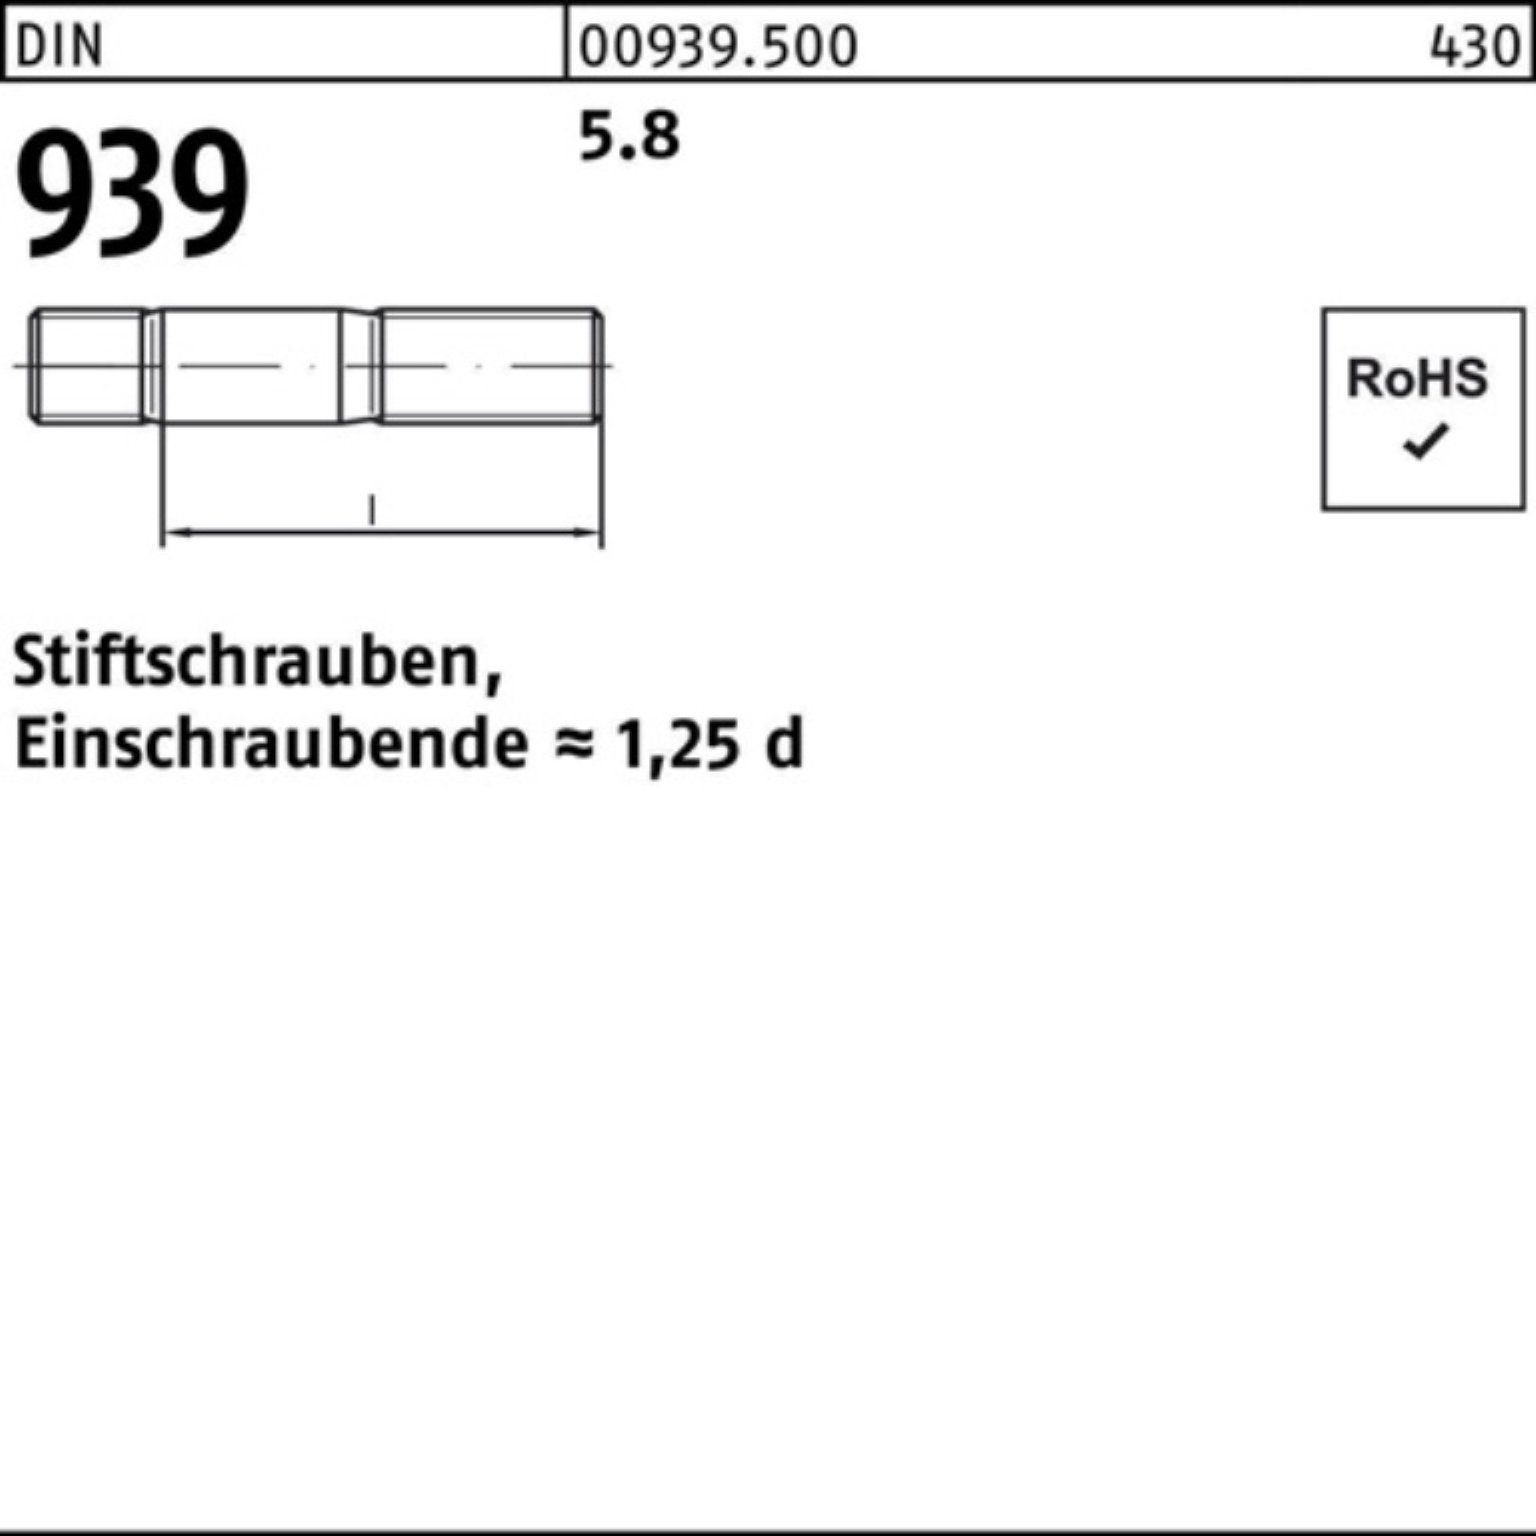 Reyher Stiftschraube 939 M16x DIN 105 5.8 Pack 25 100er Stiftschraube Einschraubende=1,25d